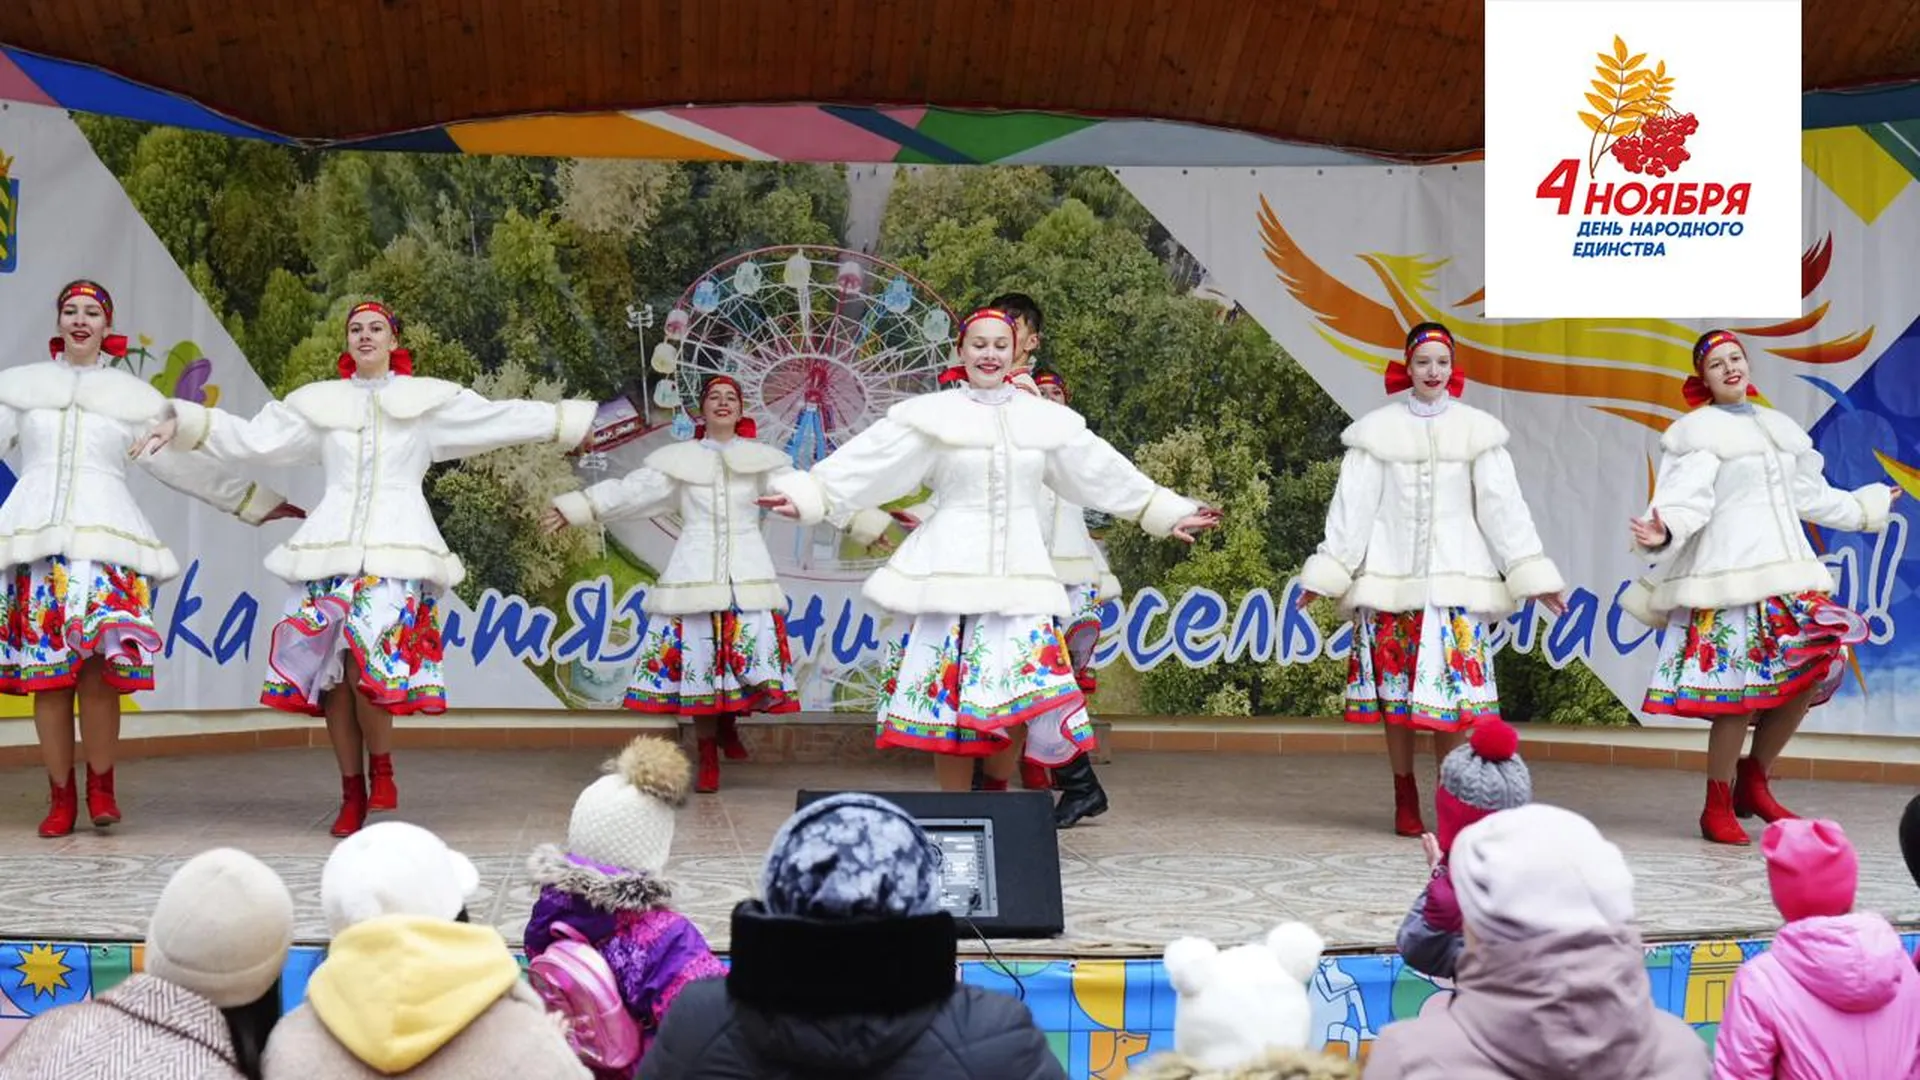 Экскурсиями, квестами, концертами отметят в Подмосковье День народного единства